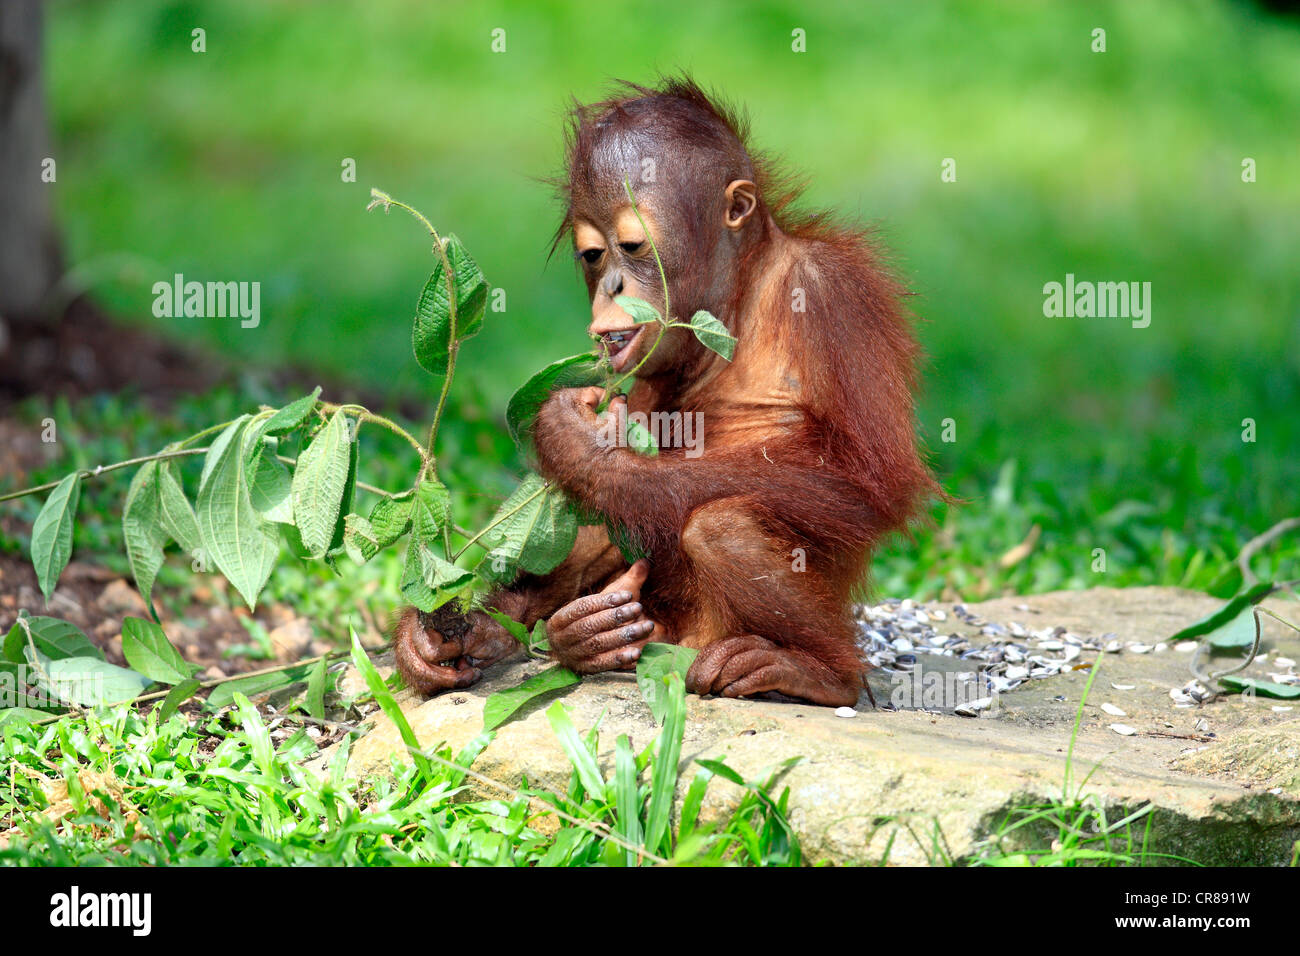 Orangutan (Pongo pygmaeus), eating young, Singapore, Asia Stock Photo